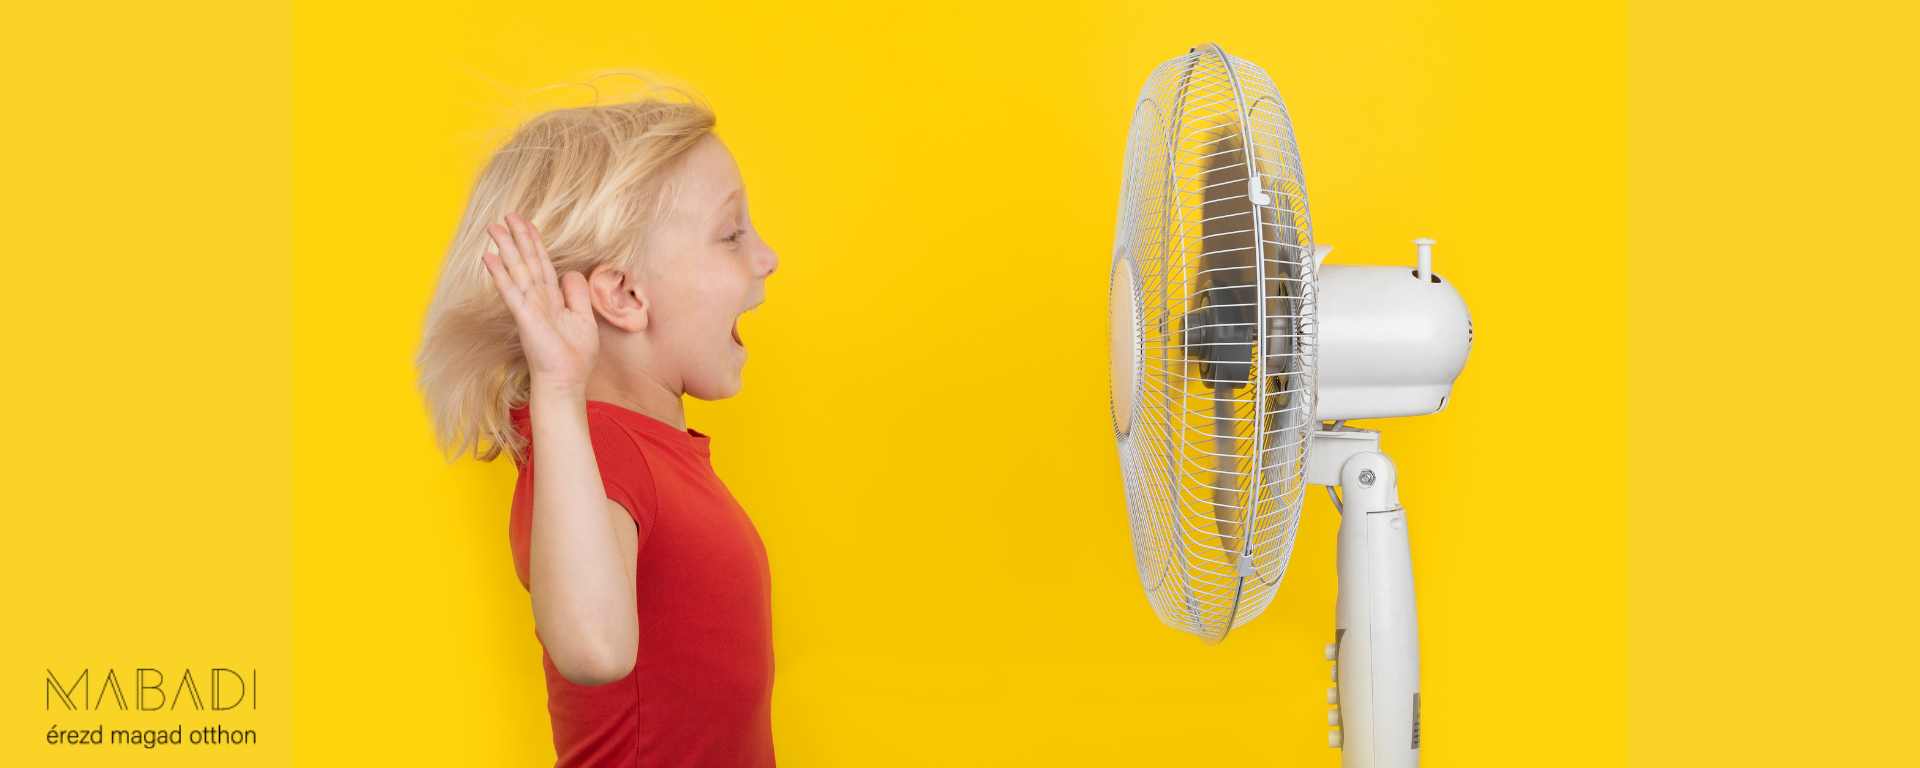 Nyári hőség a lakásban? Egy ventilátorral gond nélkül átvészeled!